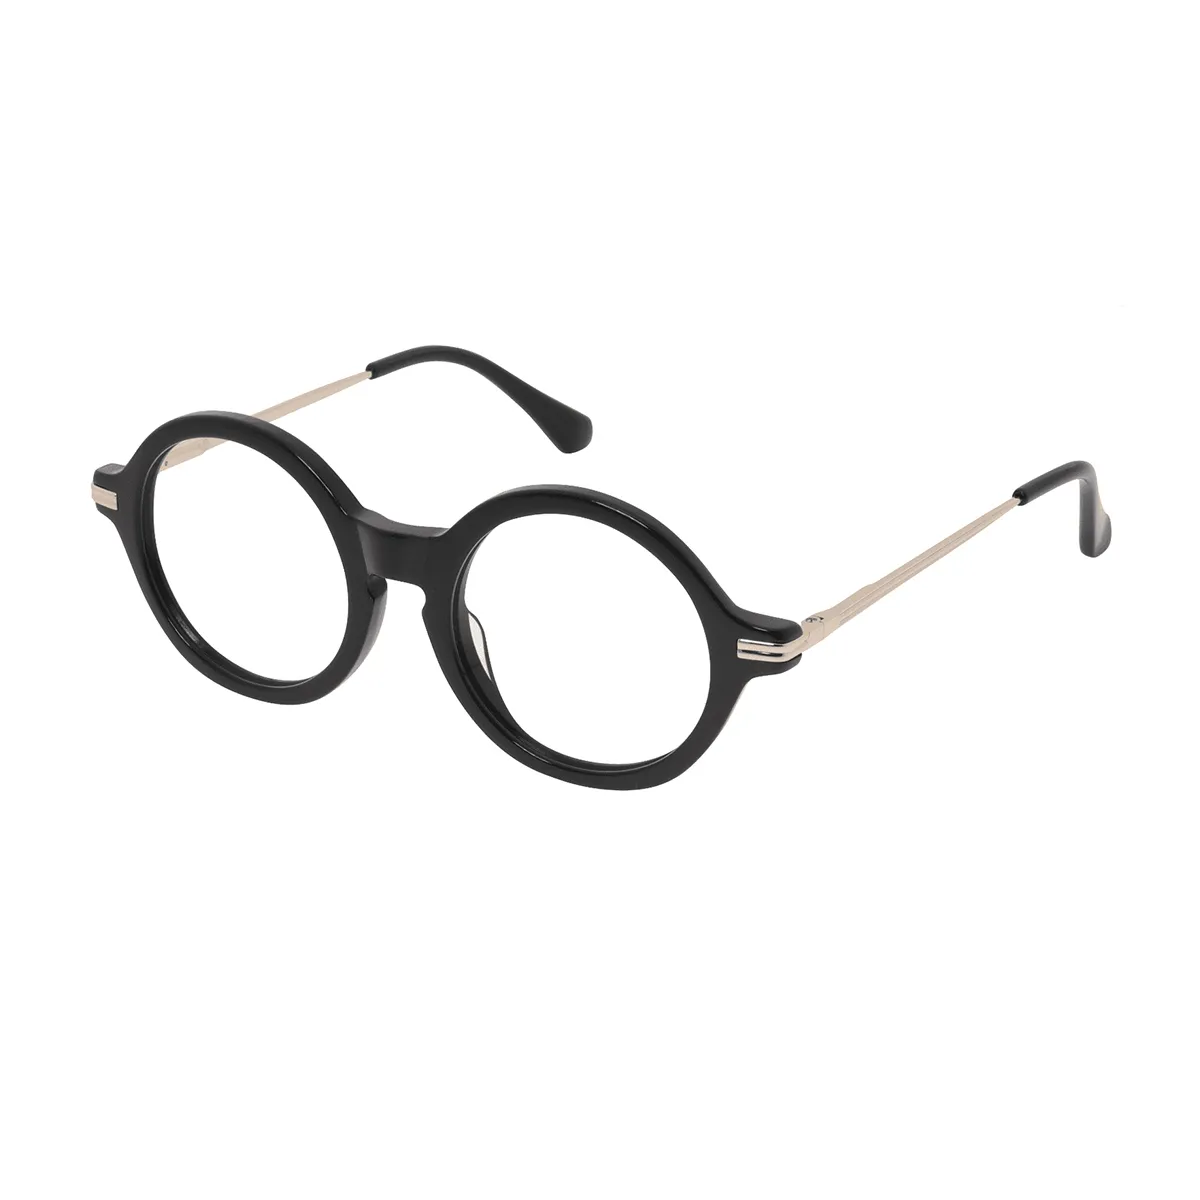 Classic Round Demi Eyeglasses for Women & Men